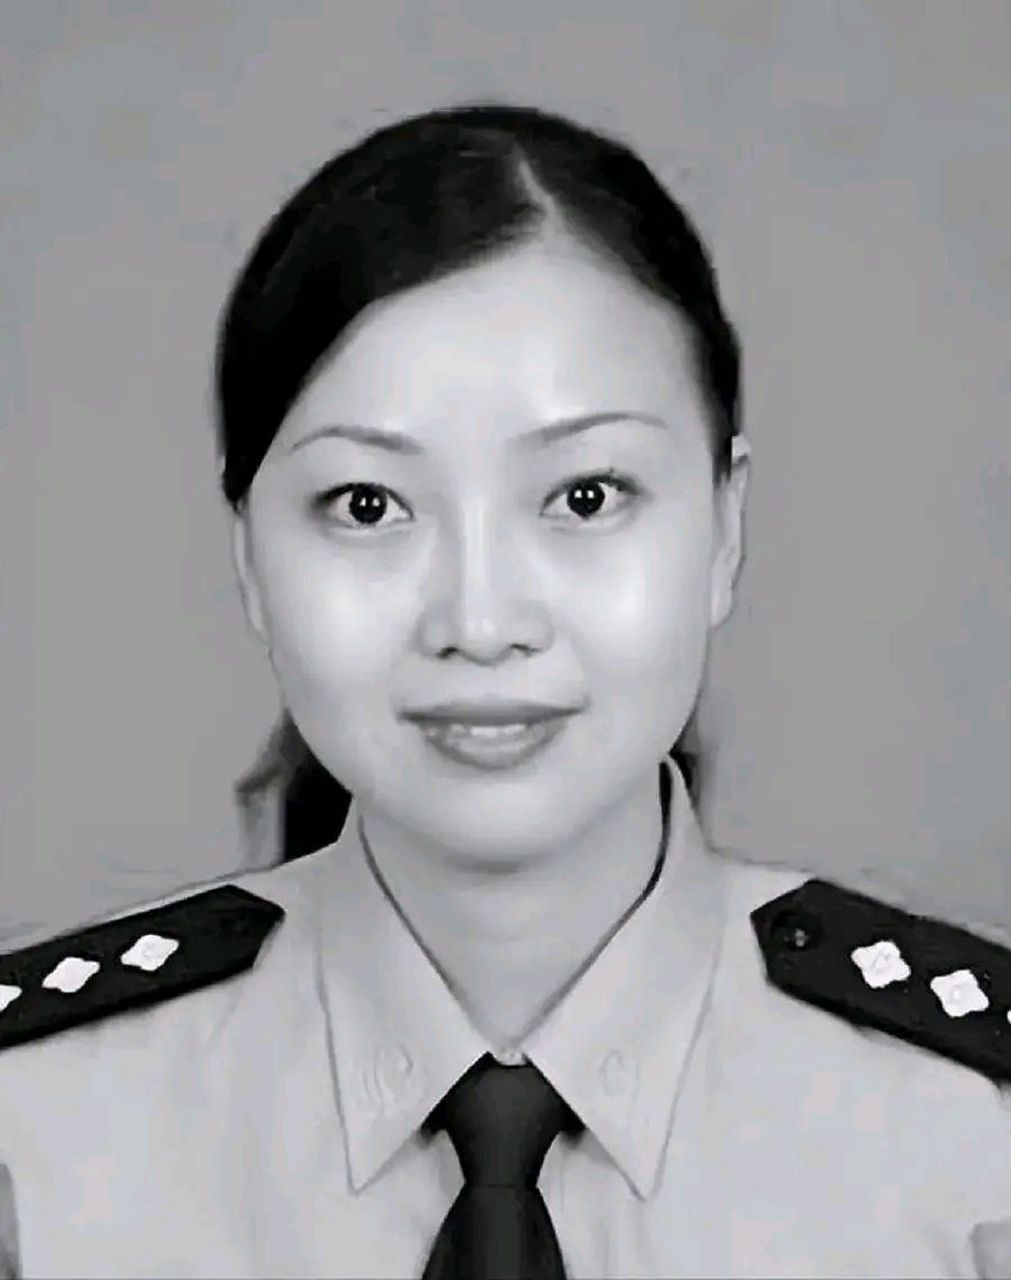 温州女警花图片